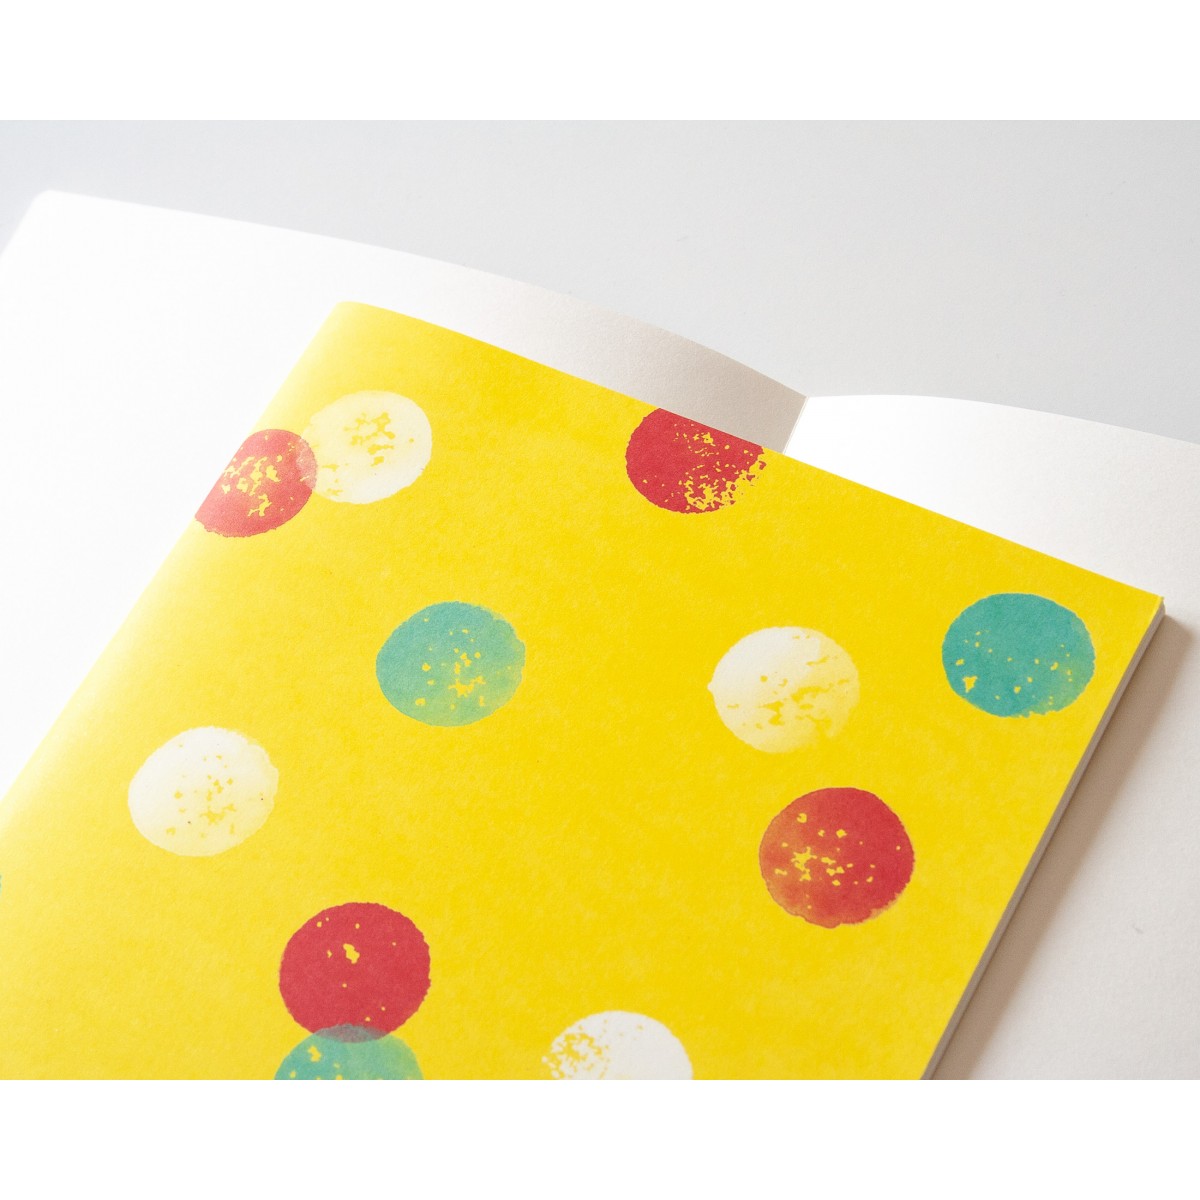 Notizheft A5 Dots on yellow // Papaya paper products